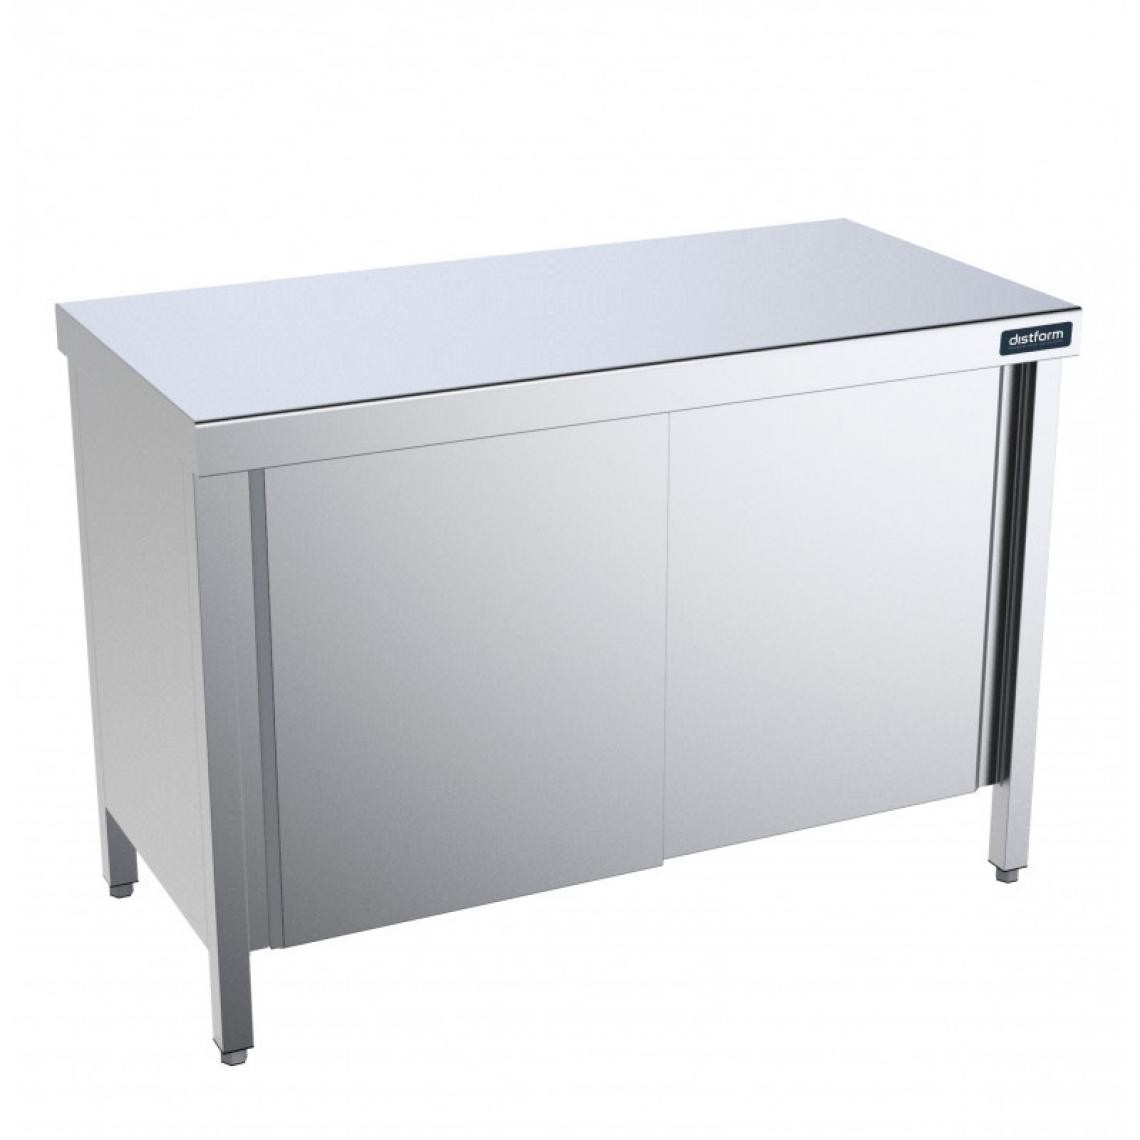 DISTFORM - Table en Inox Gamme 900 avec Portes et Etagères - Distform - Acier inoxydable2000x900 - Tables à manger